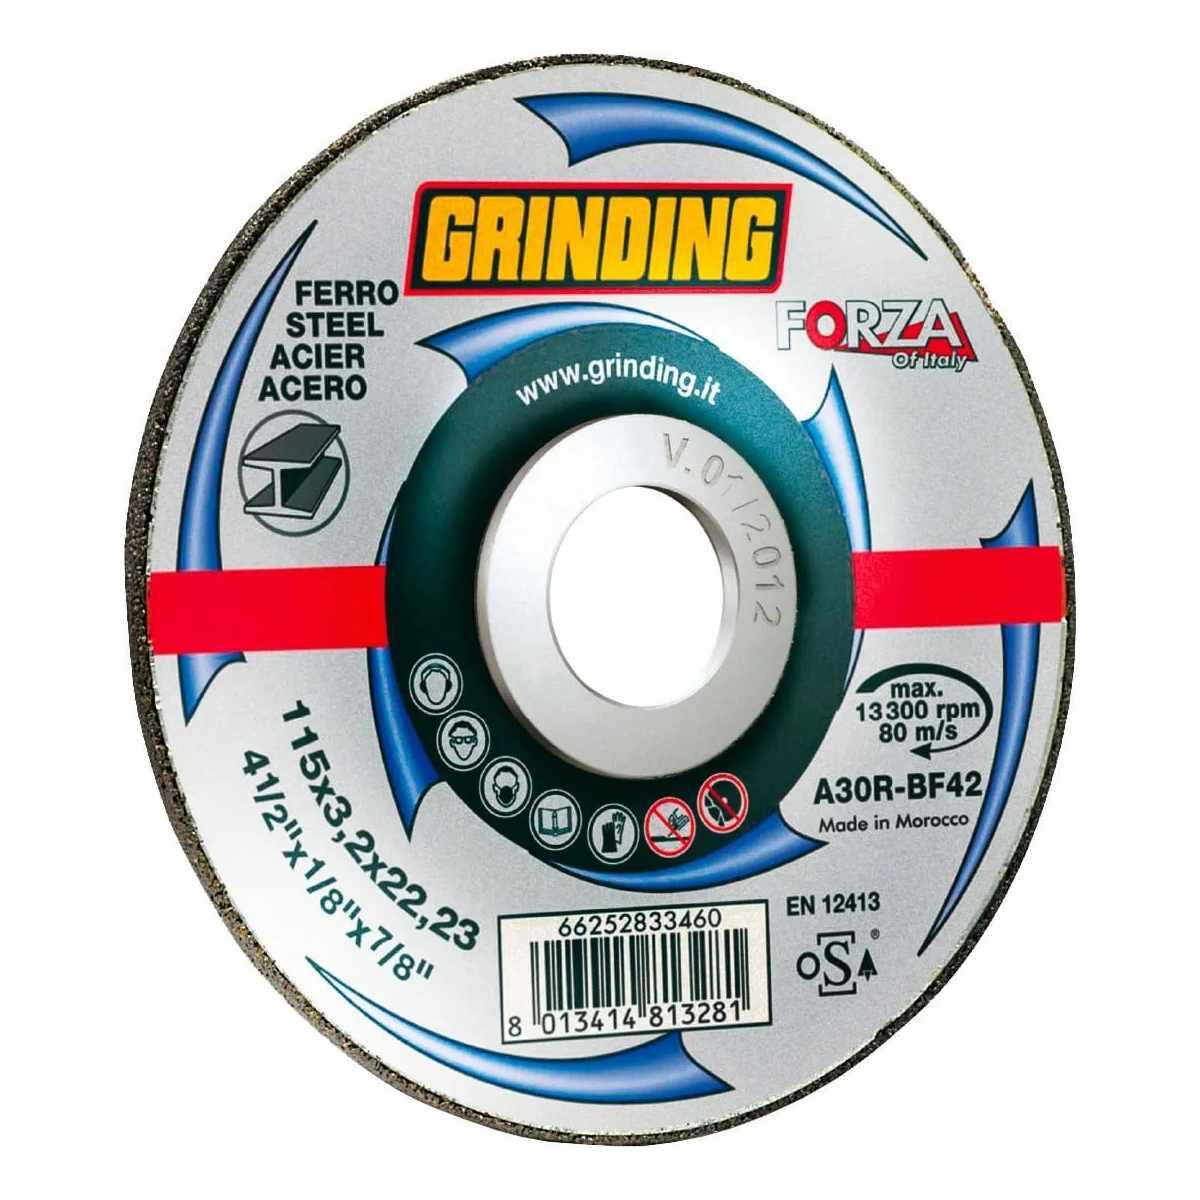 Grinding Disco taglio ferro centro depresso 115 x 3,2 x22,3 grinding forza  2003190000025 8013414813281